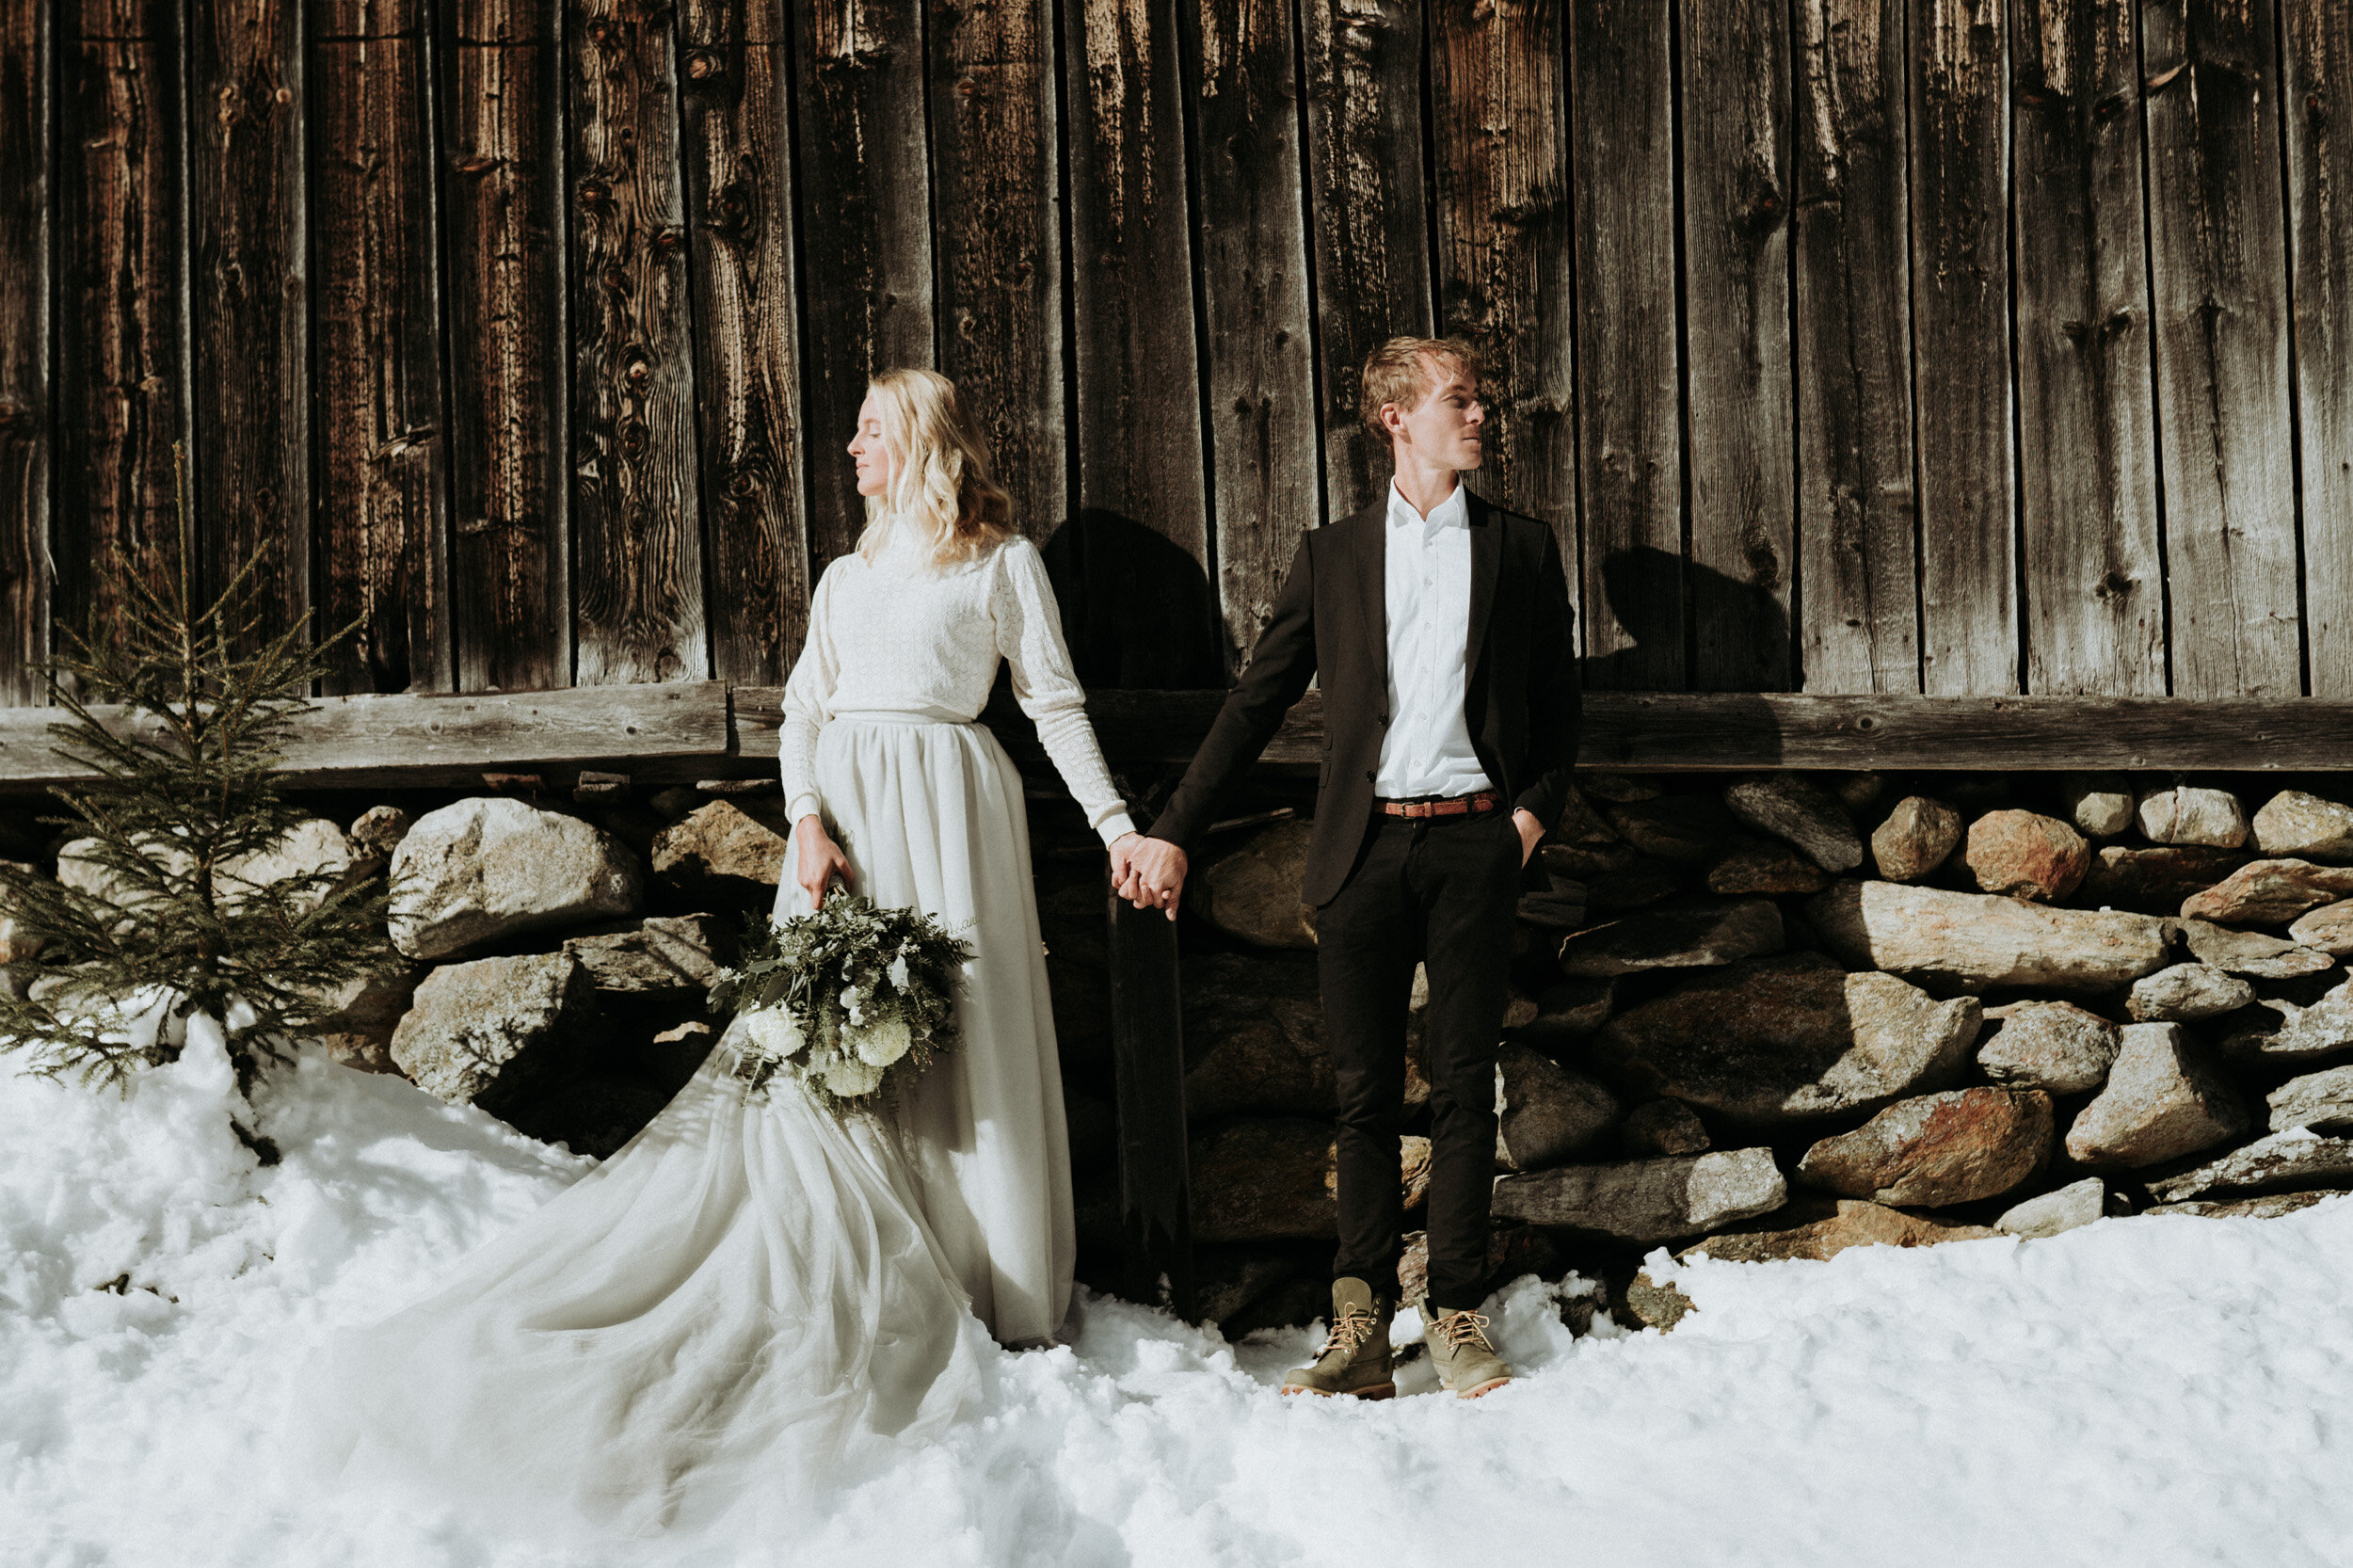 Hochzeitsfotograf-Tirol-Brautpaar-Elopement-Scheunenhochzeit-Innsbruck-Gschnitztal-2.jpg